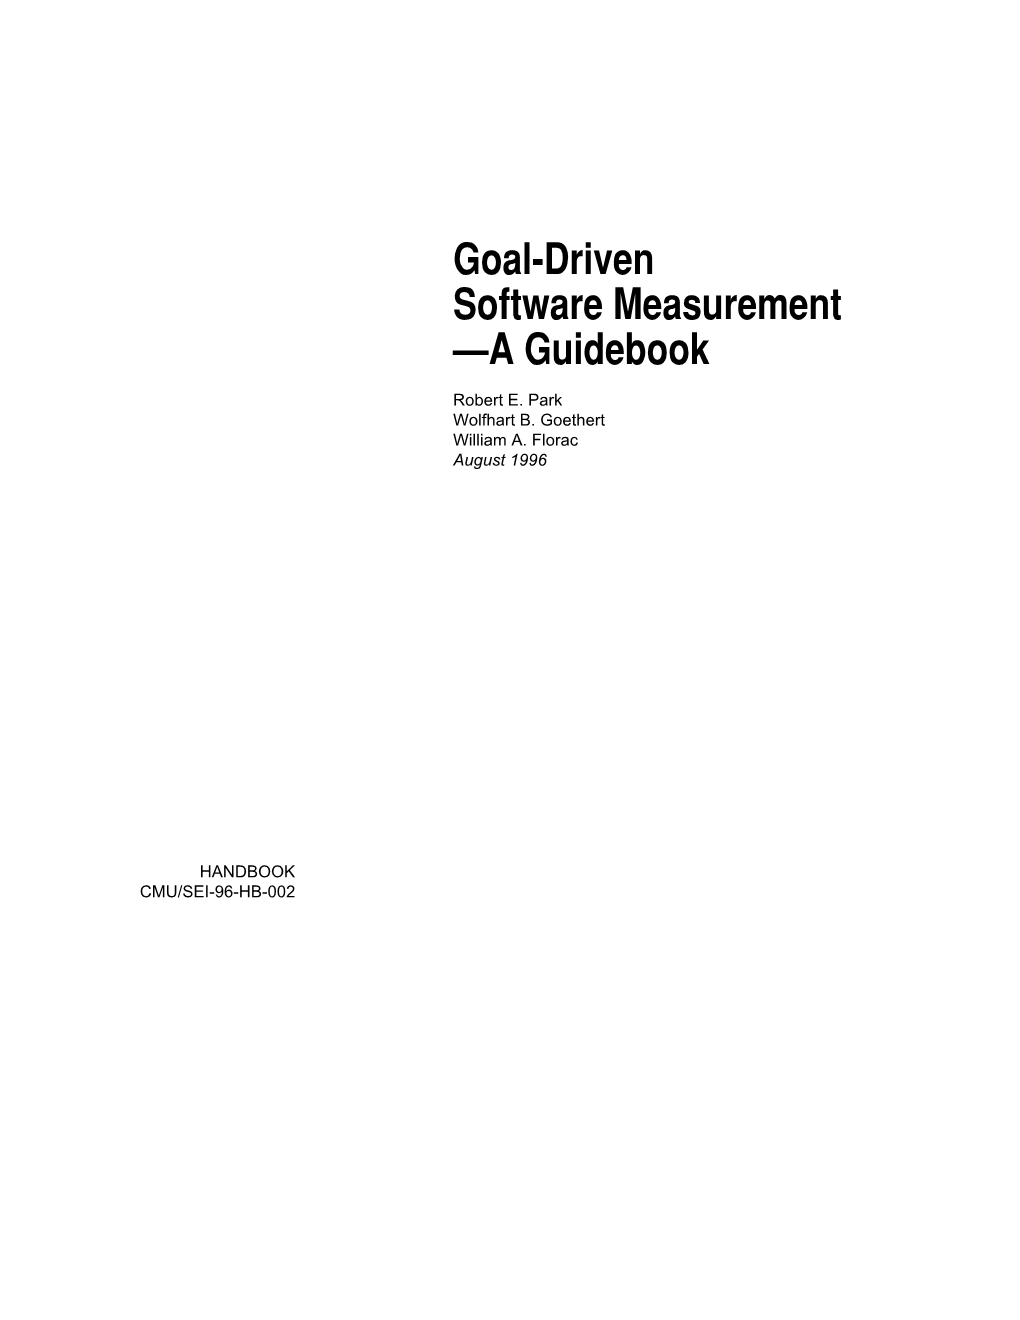 Goal-Driven Software Measurement —A Guidebook